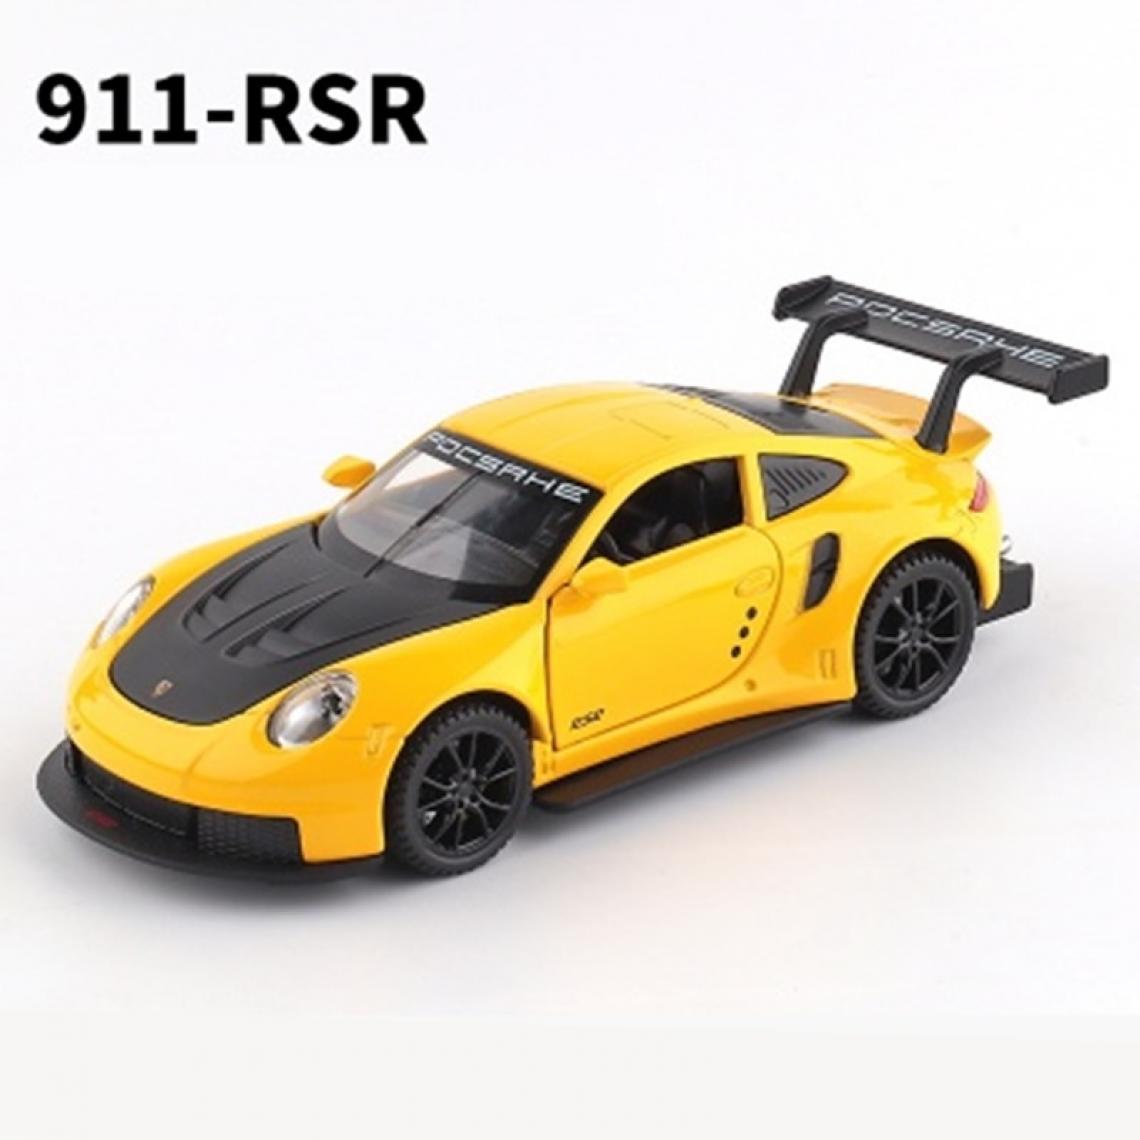 Universal - 1: 32 Porsche 911 RSR Coupé en alliage Voiture jouet moulée sous pression Voiture jouet en métal Collection haute simulation Jouet pour enfants | Voiture jouet moulée sous pression (jaune) - Voitures